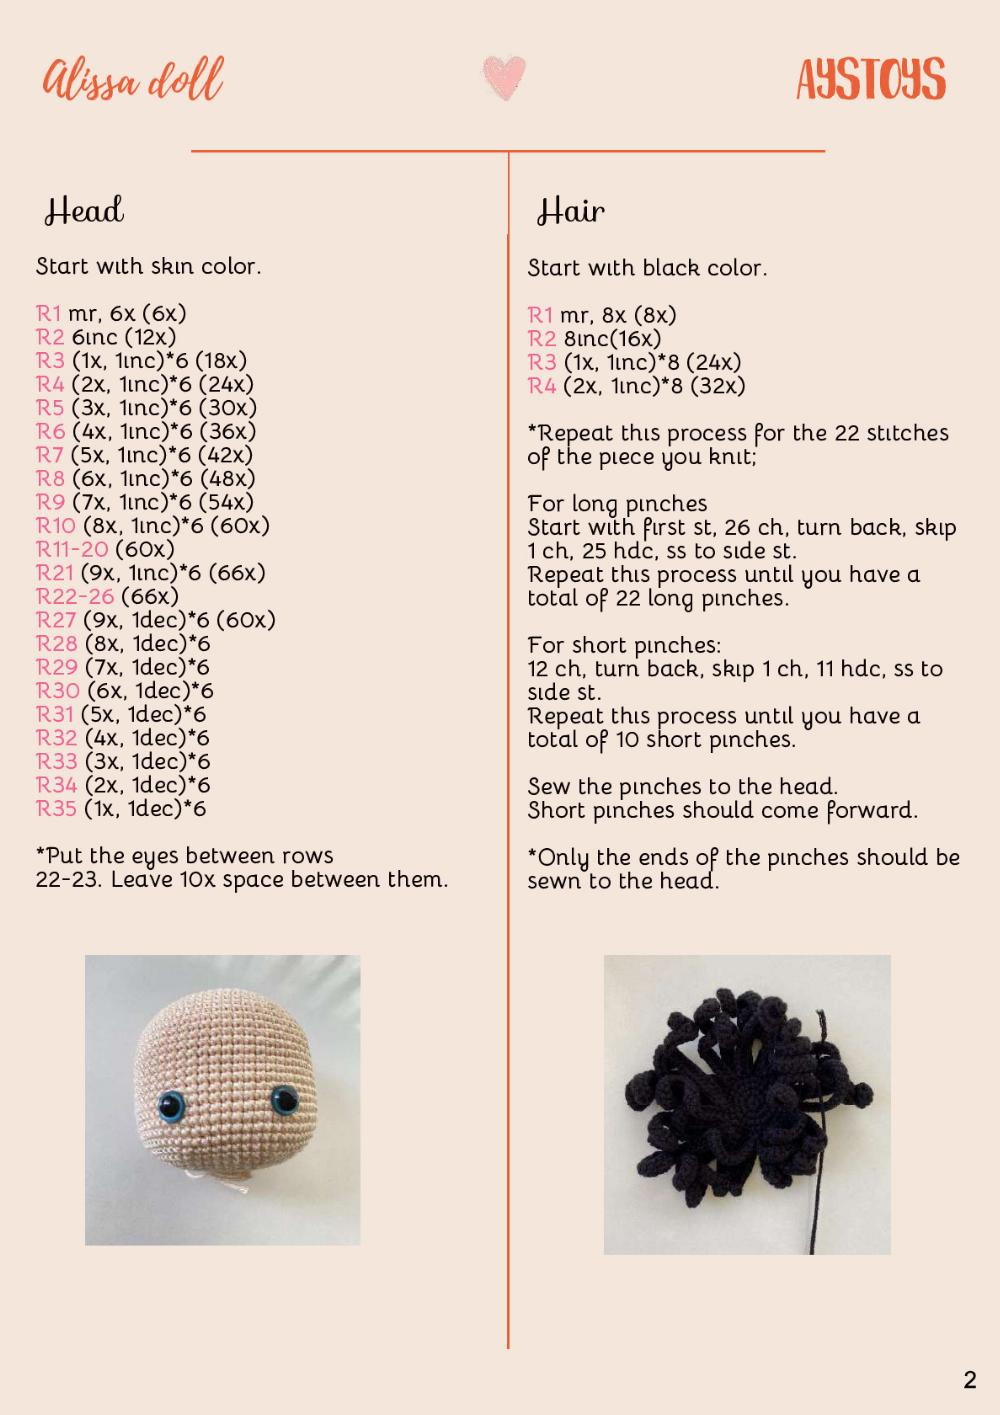 AYSTOYS Alissa doll crochet pattern